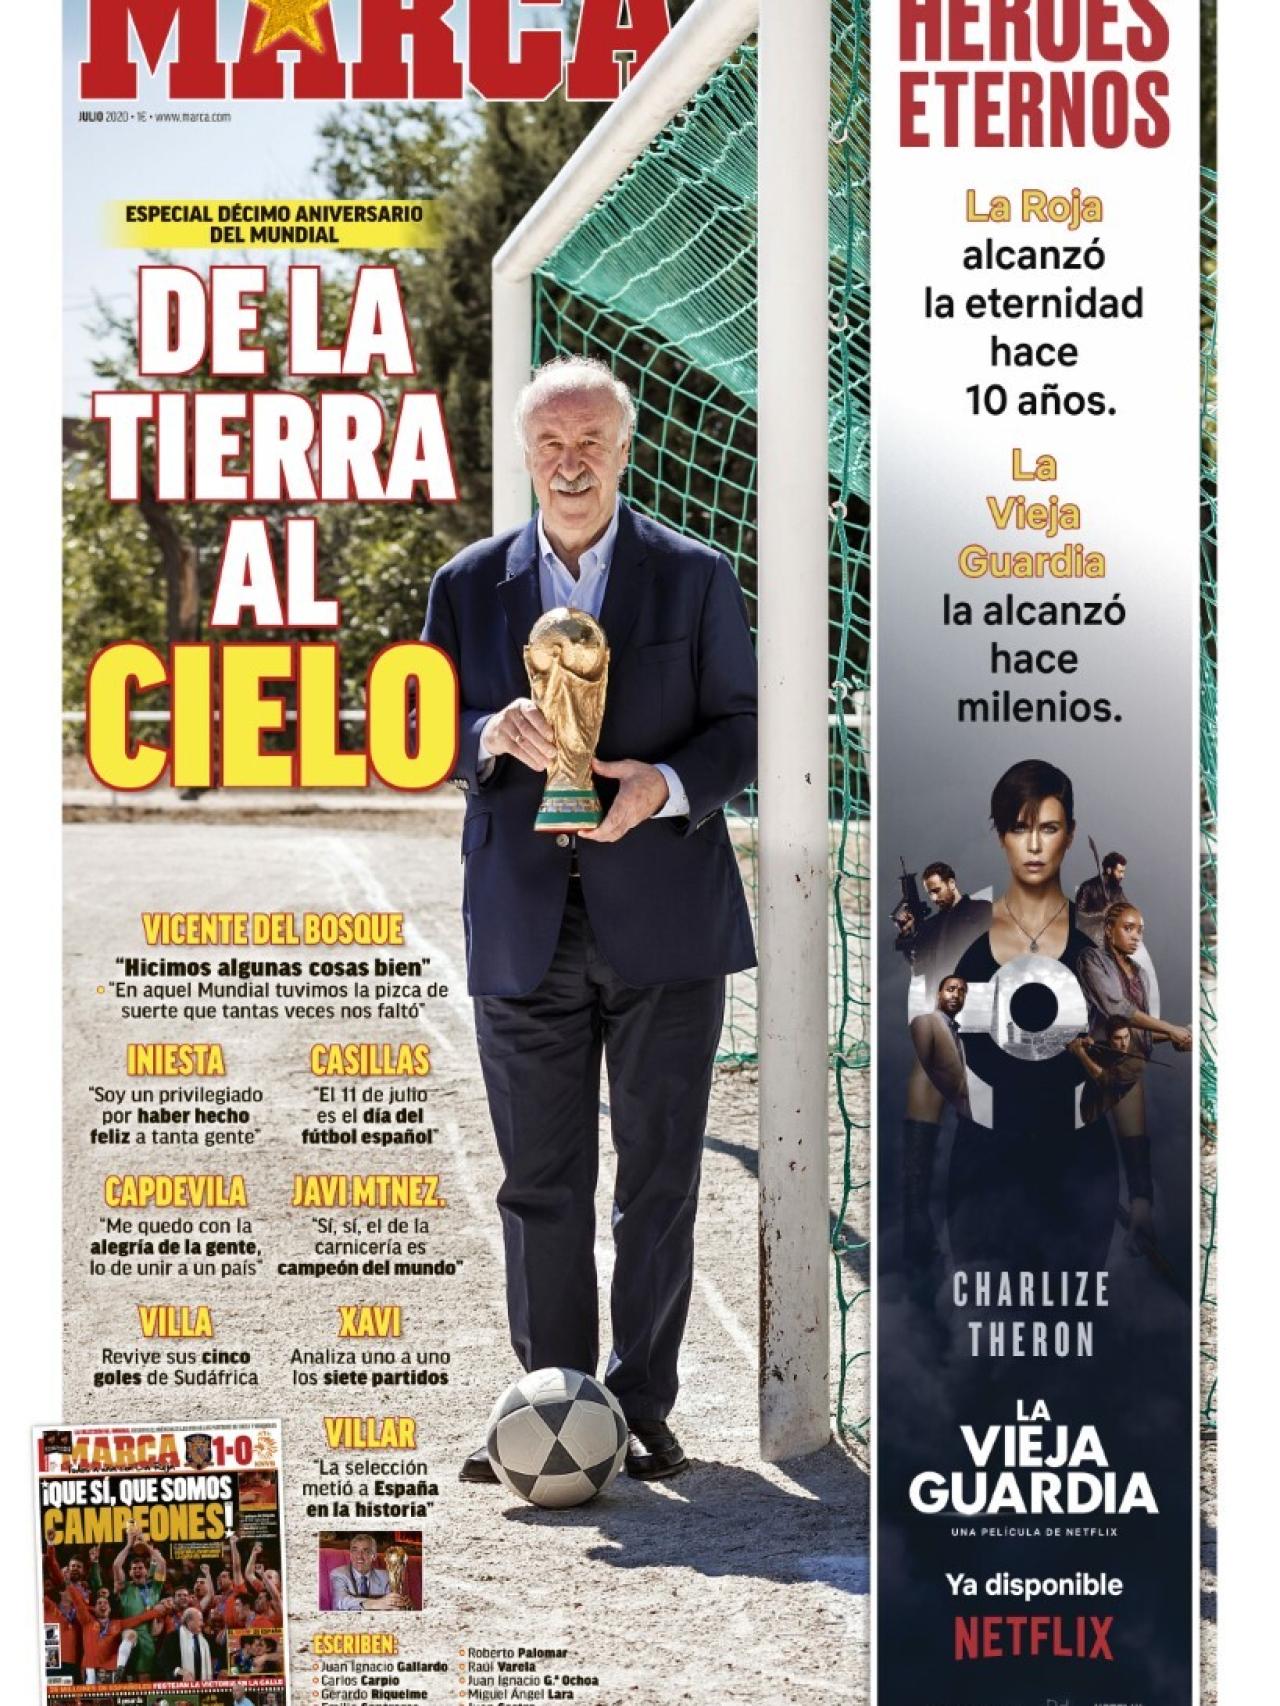 La portada especial del diario MARCA (11/07/2020)